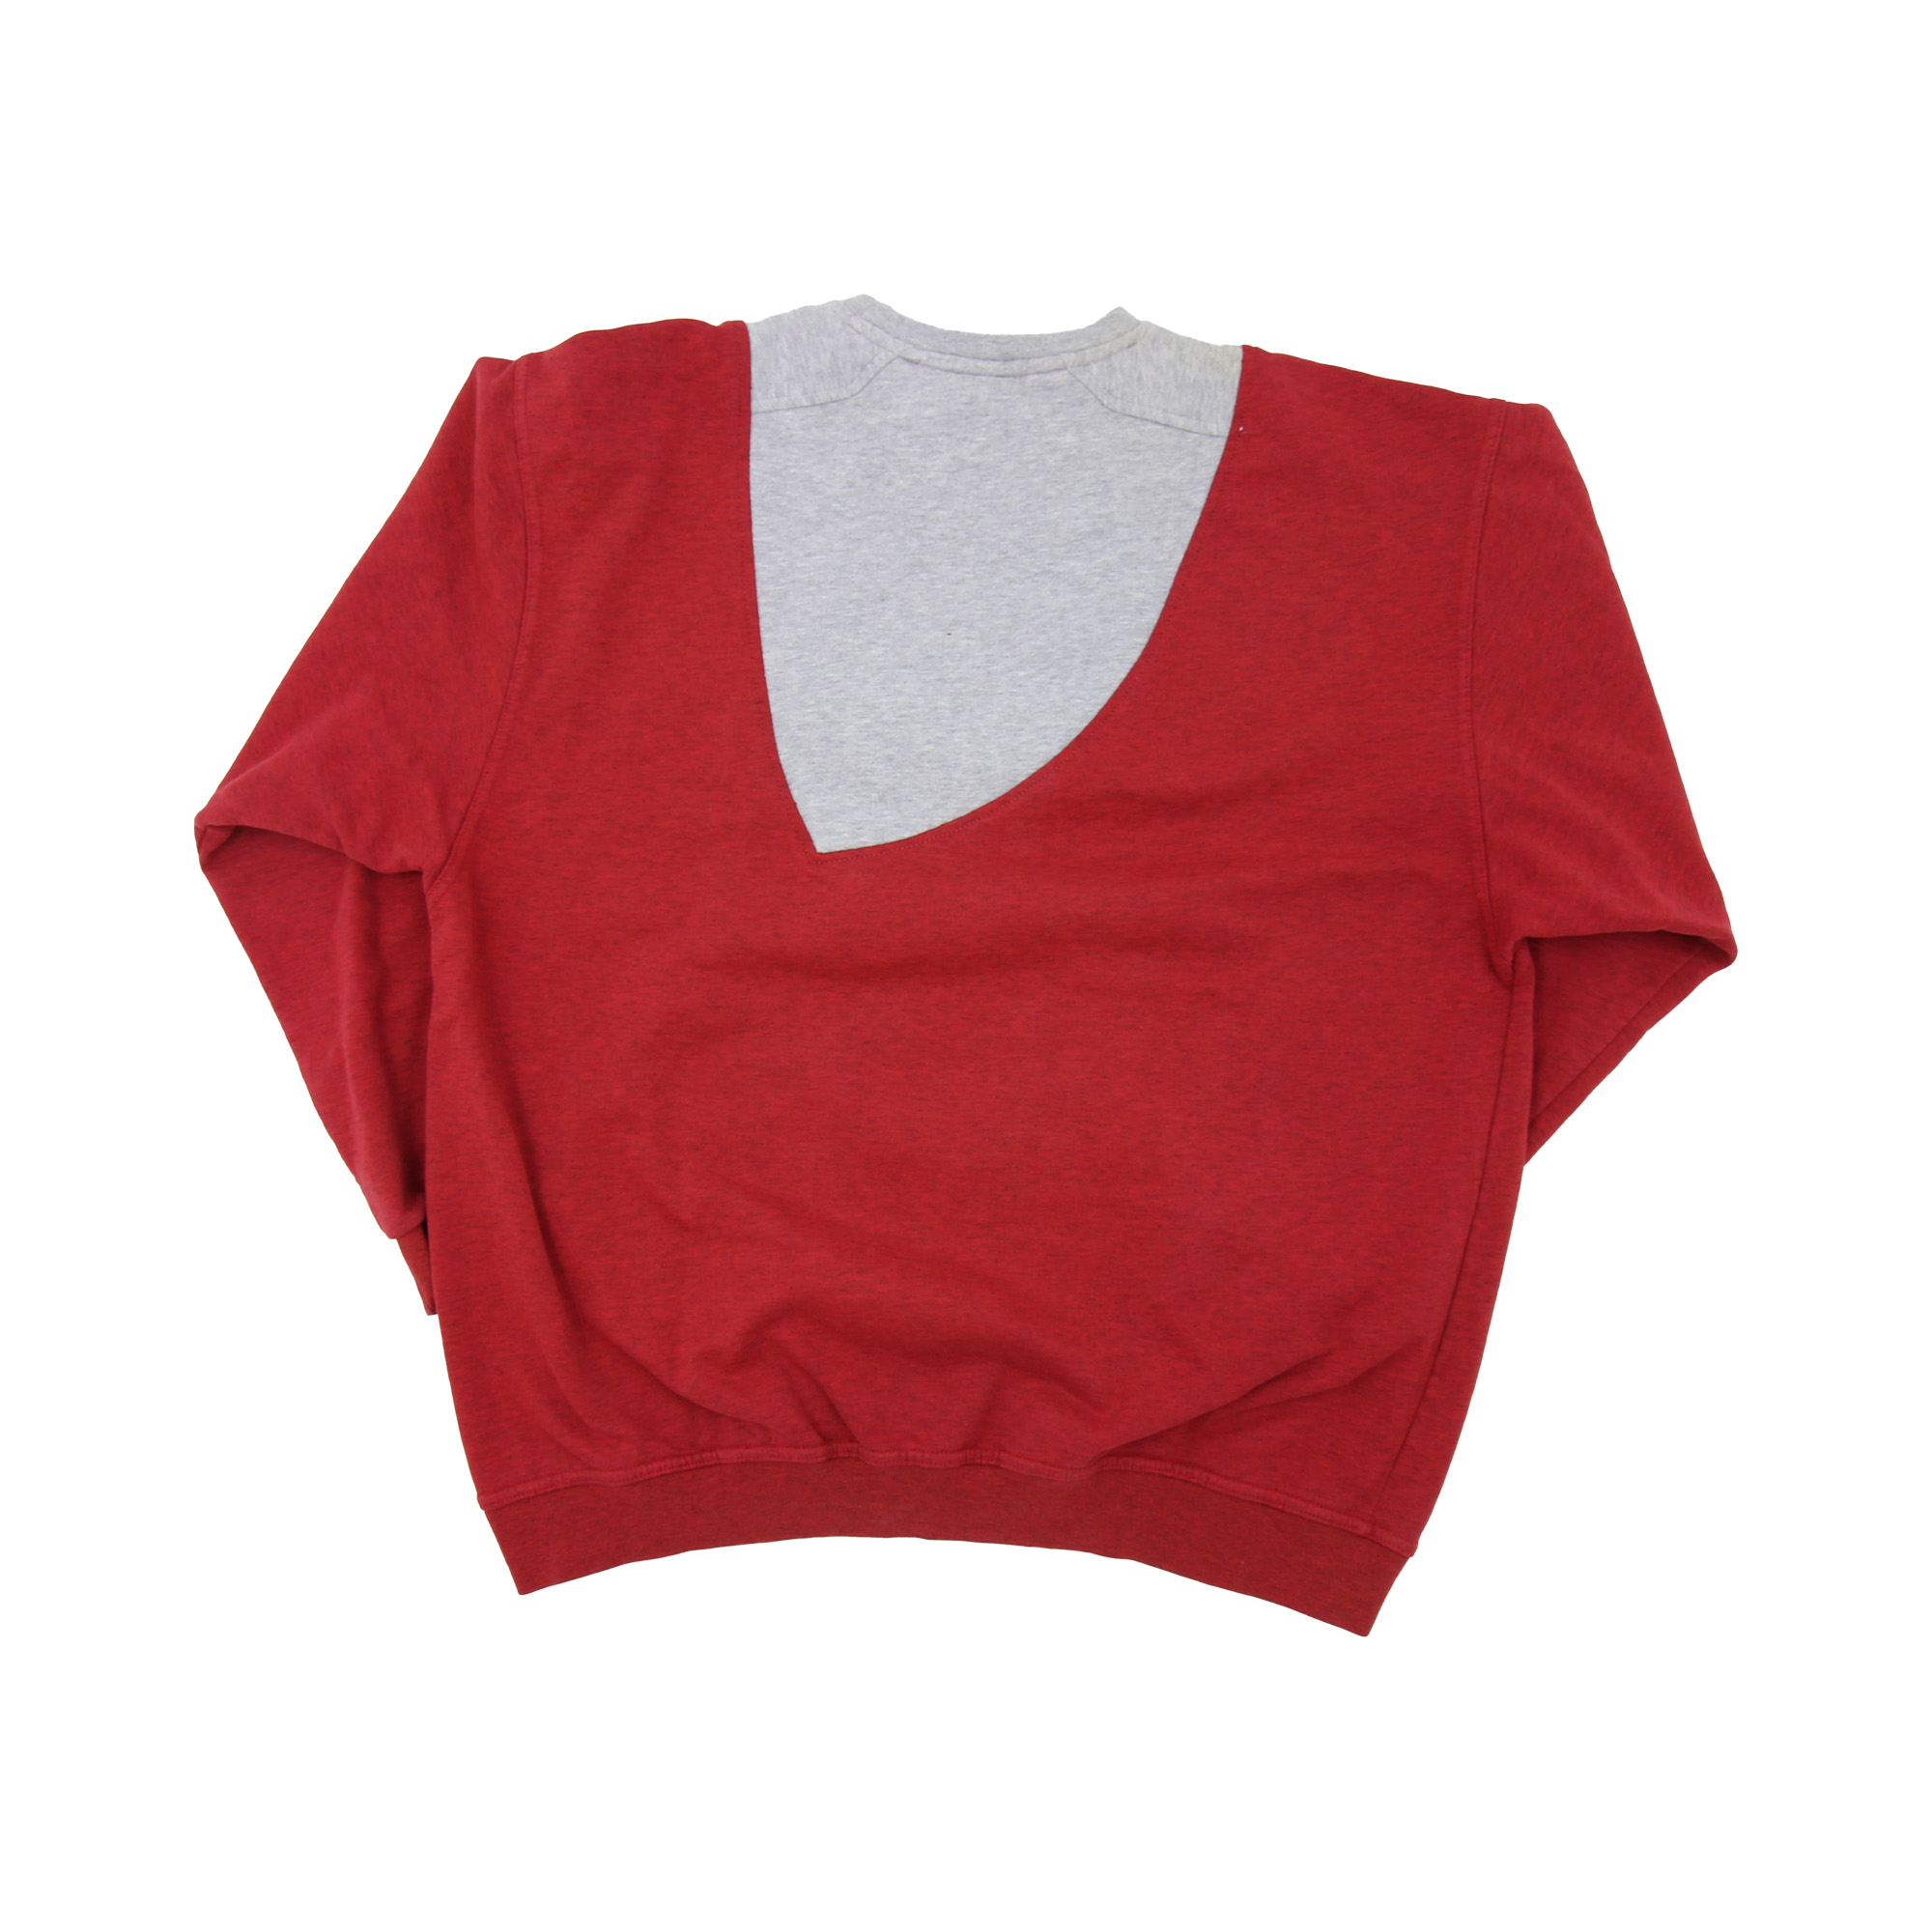 Umbro Rework Sweatshirt -  XL